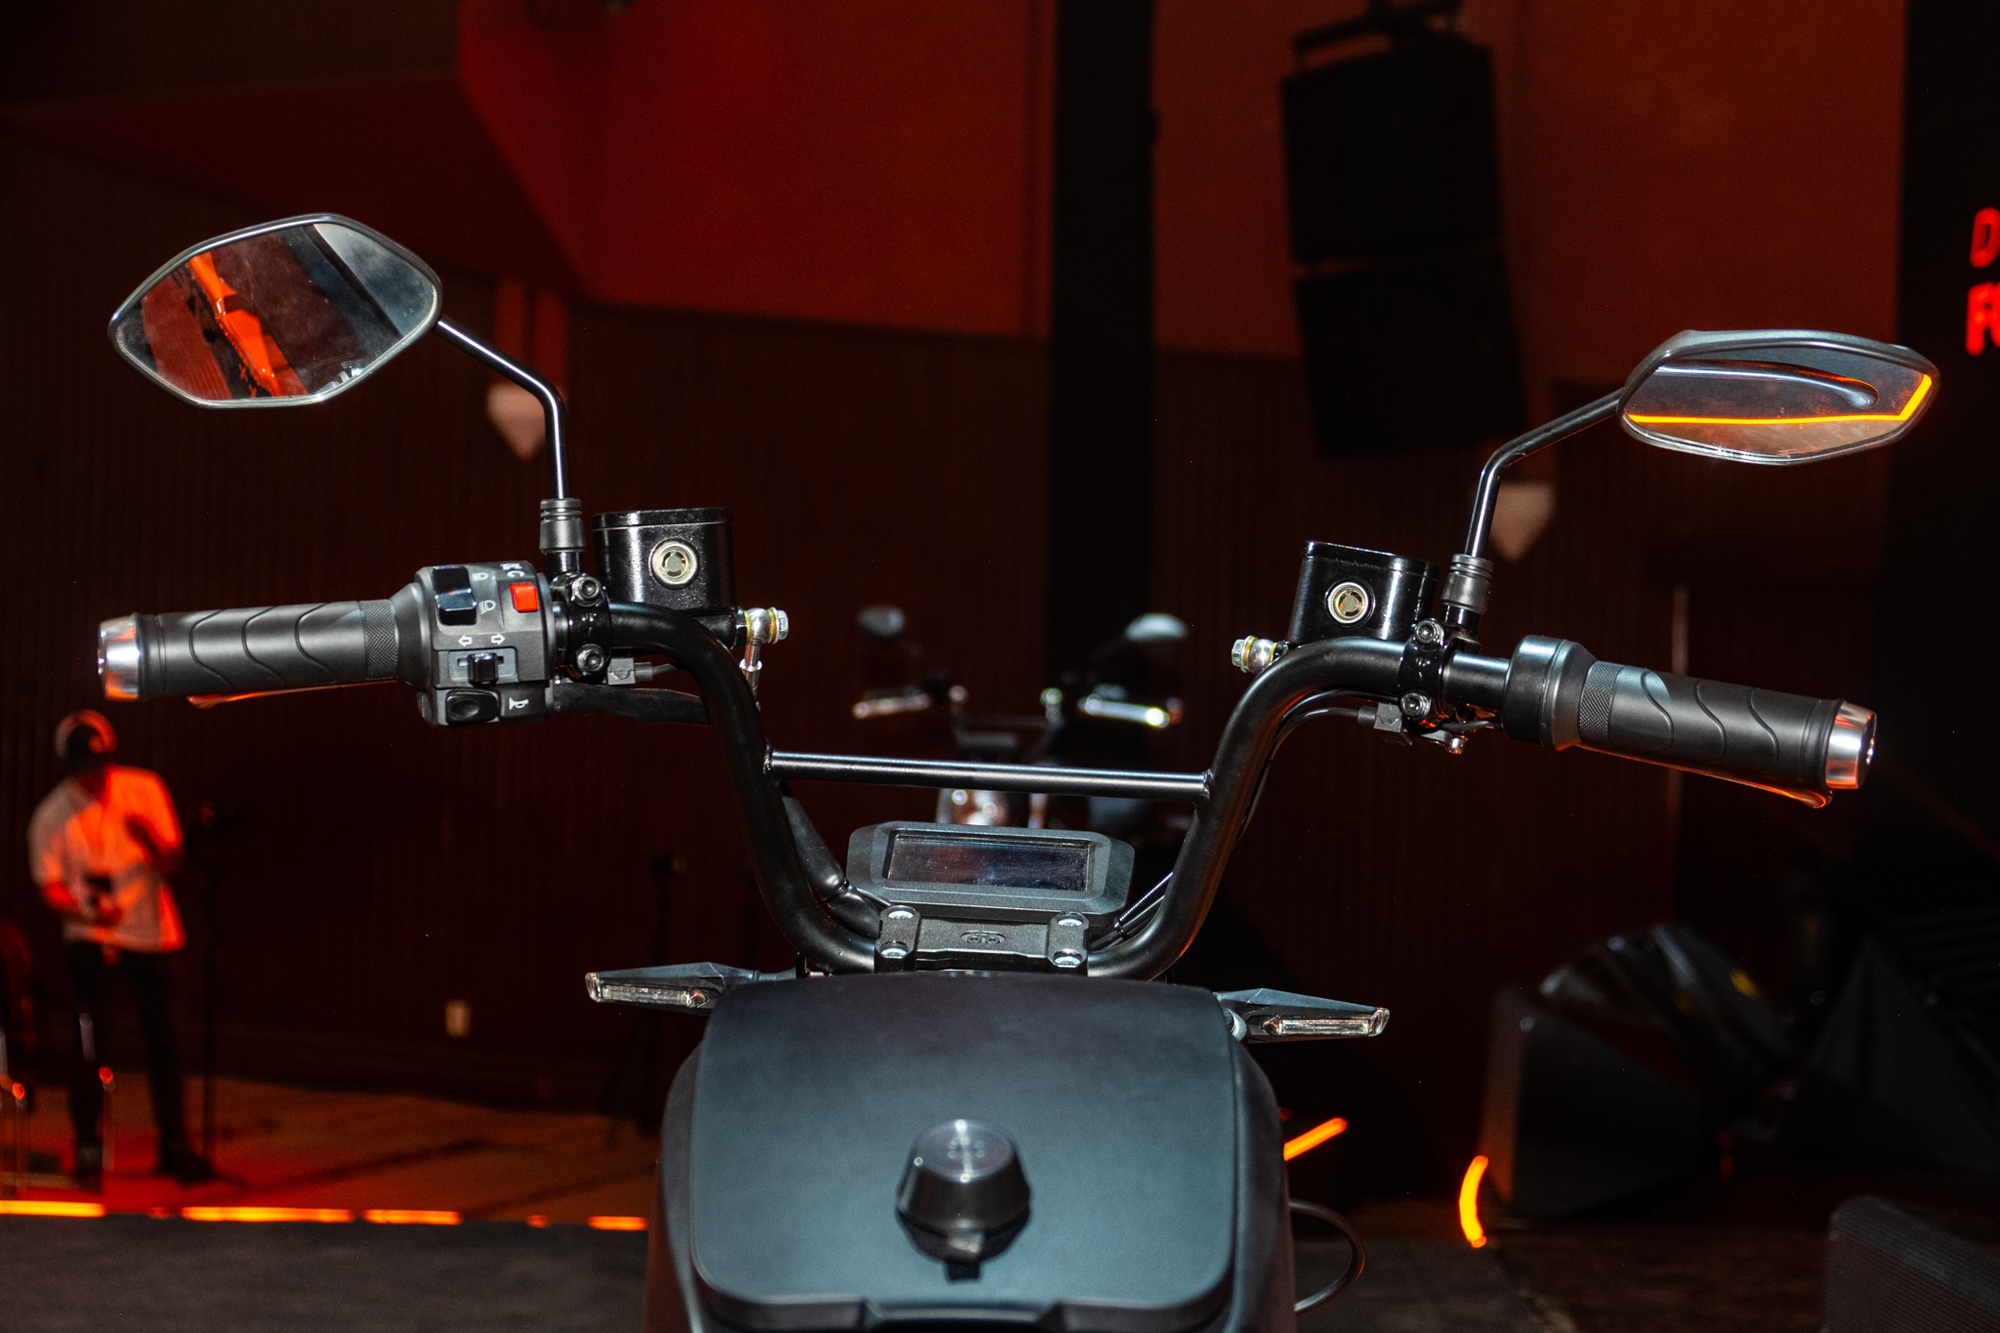 Ra mắt Dat Bike Weaver++: Giá 65,9 triệu đồng, dáng cổ điển, sạc nhanh chưa từng có tại Việt Nam - ảnh 9